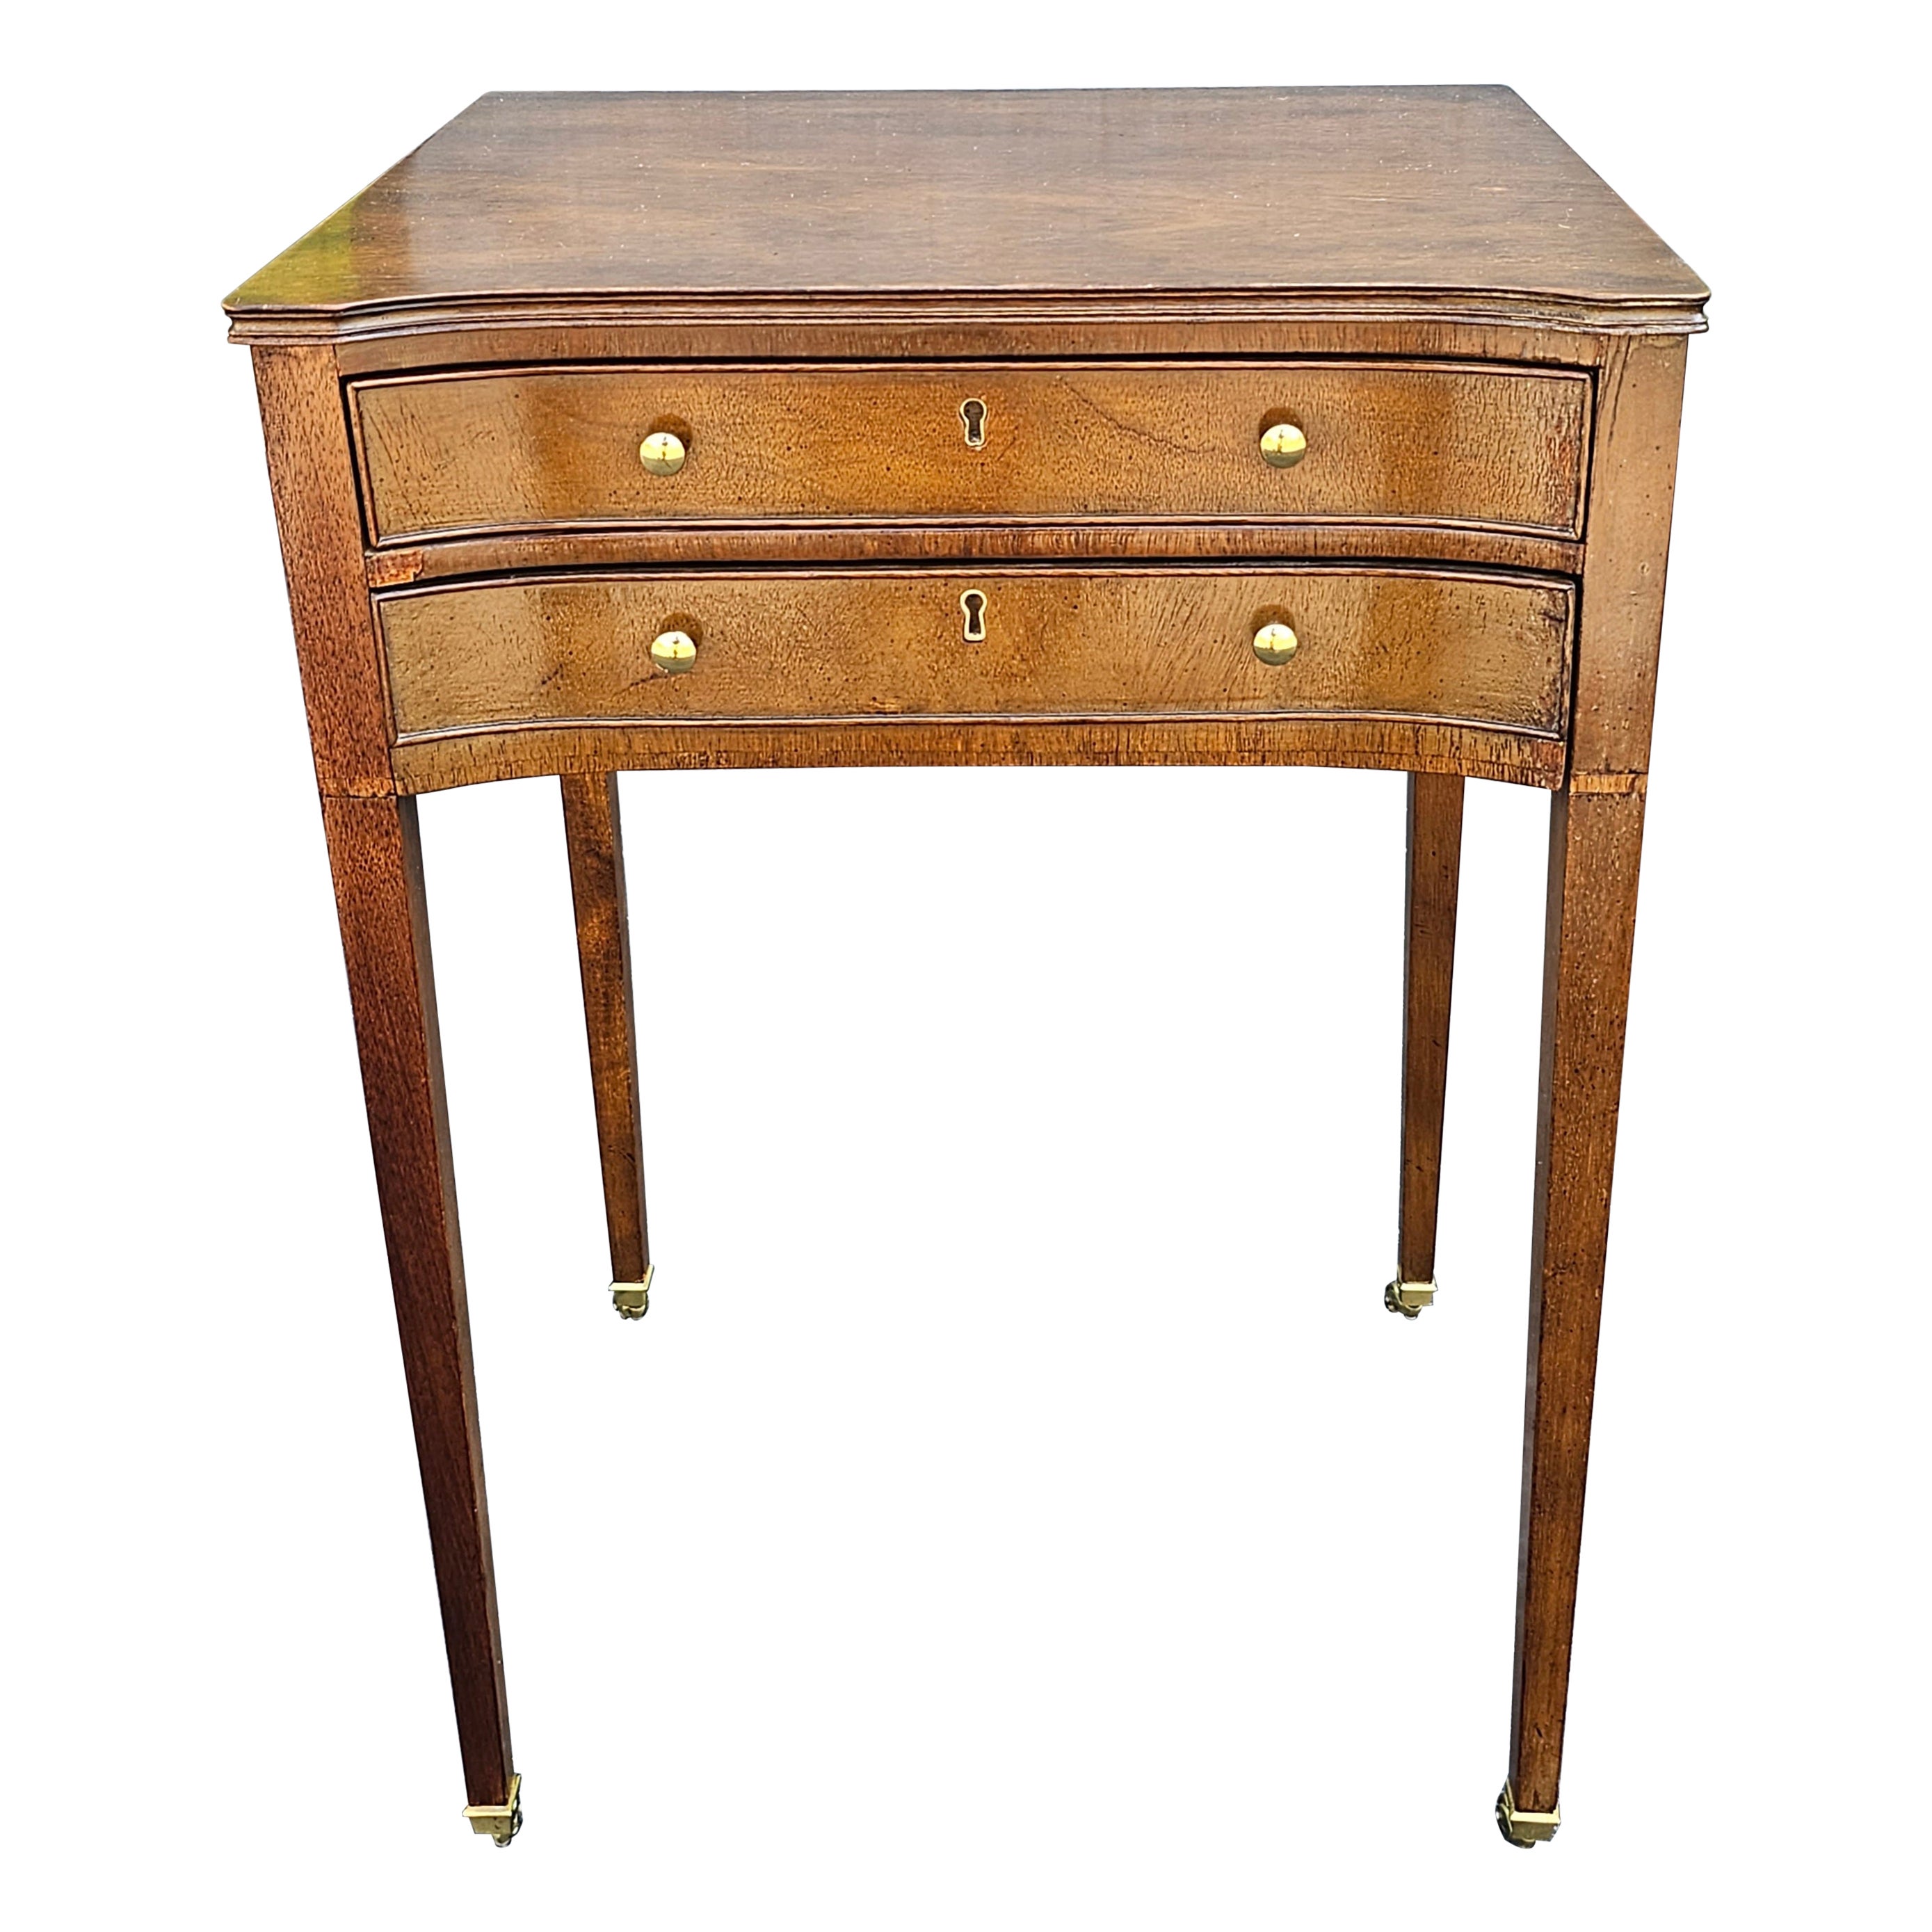 Table d'appoint à deux tiroirs de la collection historique Charleston sur roues de Baker Furniture